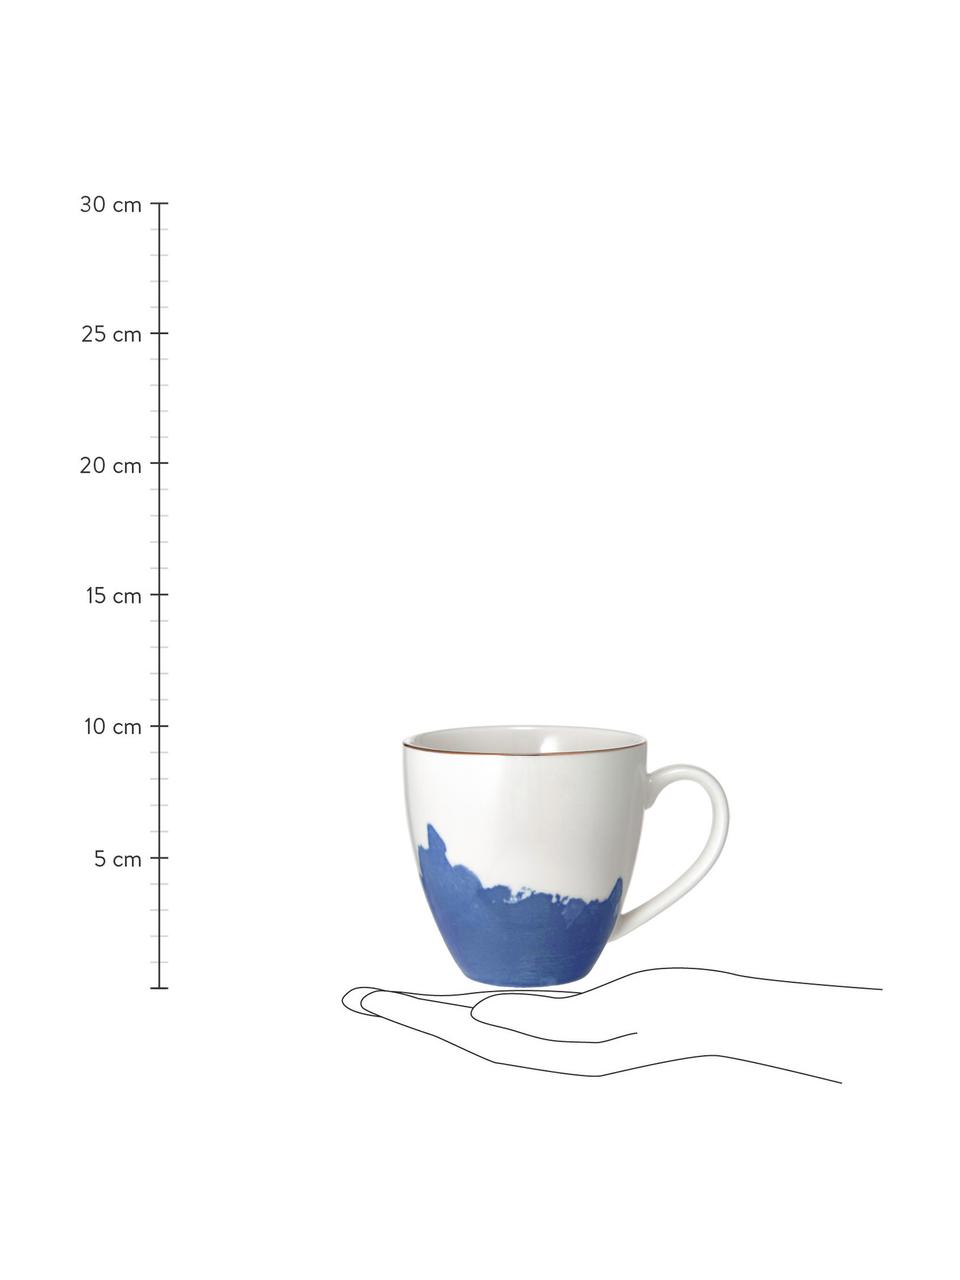 Tazza caffè in porcellana con sfumatura e bordo dorato Rosie 2 pz, Porcellana, Bianco, blu, Ø 12 x Alt. 9 cm